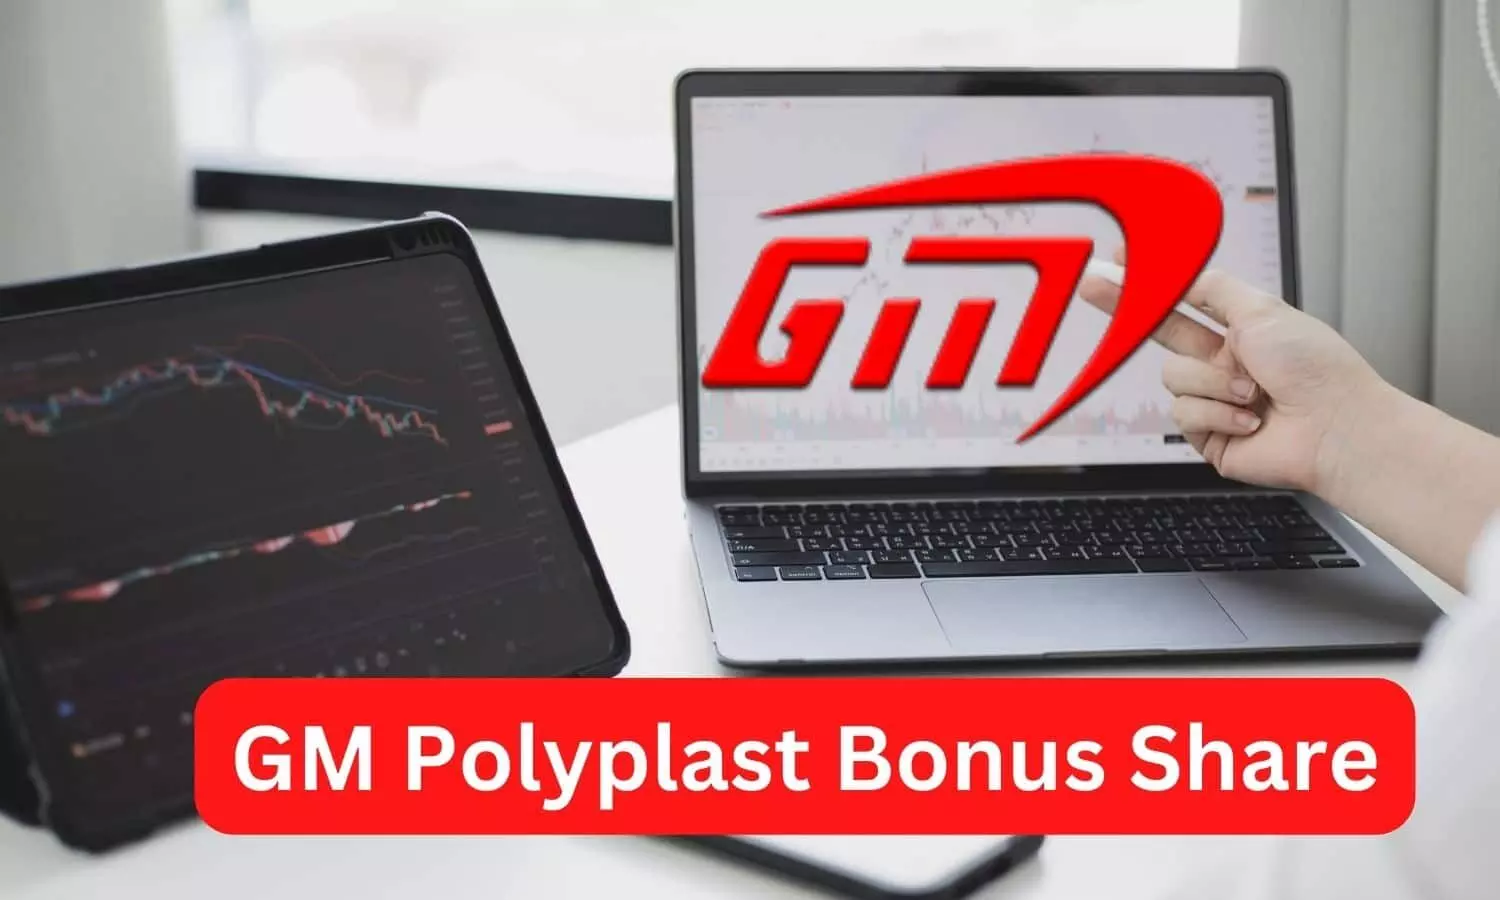 GM Polyplast Bonus Share News